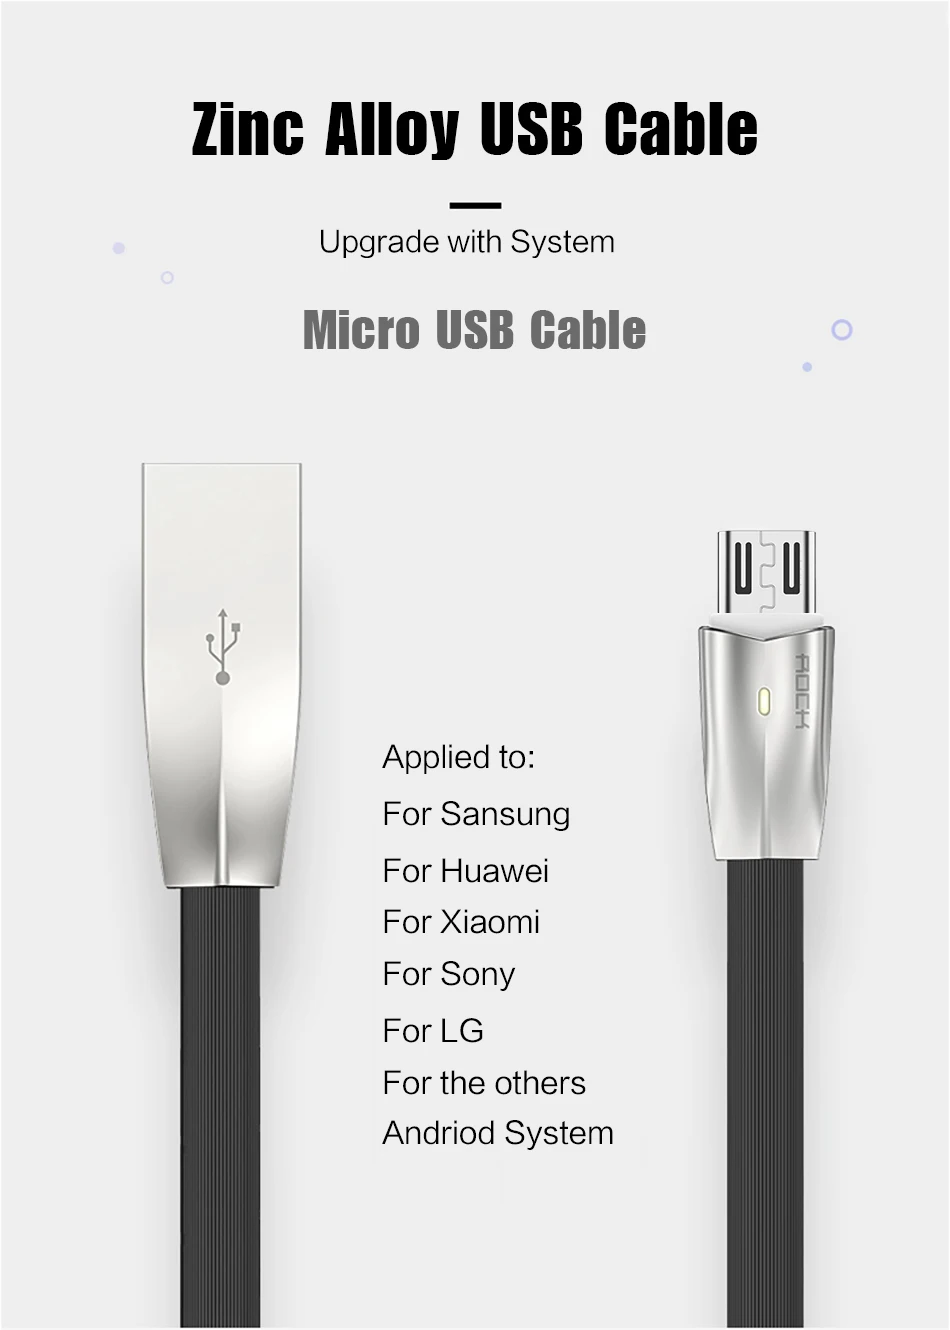 3D светодиодный светильник Micro USB кабель ROCK 2A цинковый сплав светодиодный кабель Micro кабель для Galaxy быстрое зарядное устройство кабель для Xiaomi для huawei